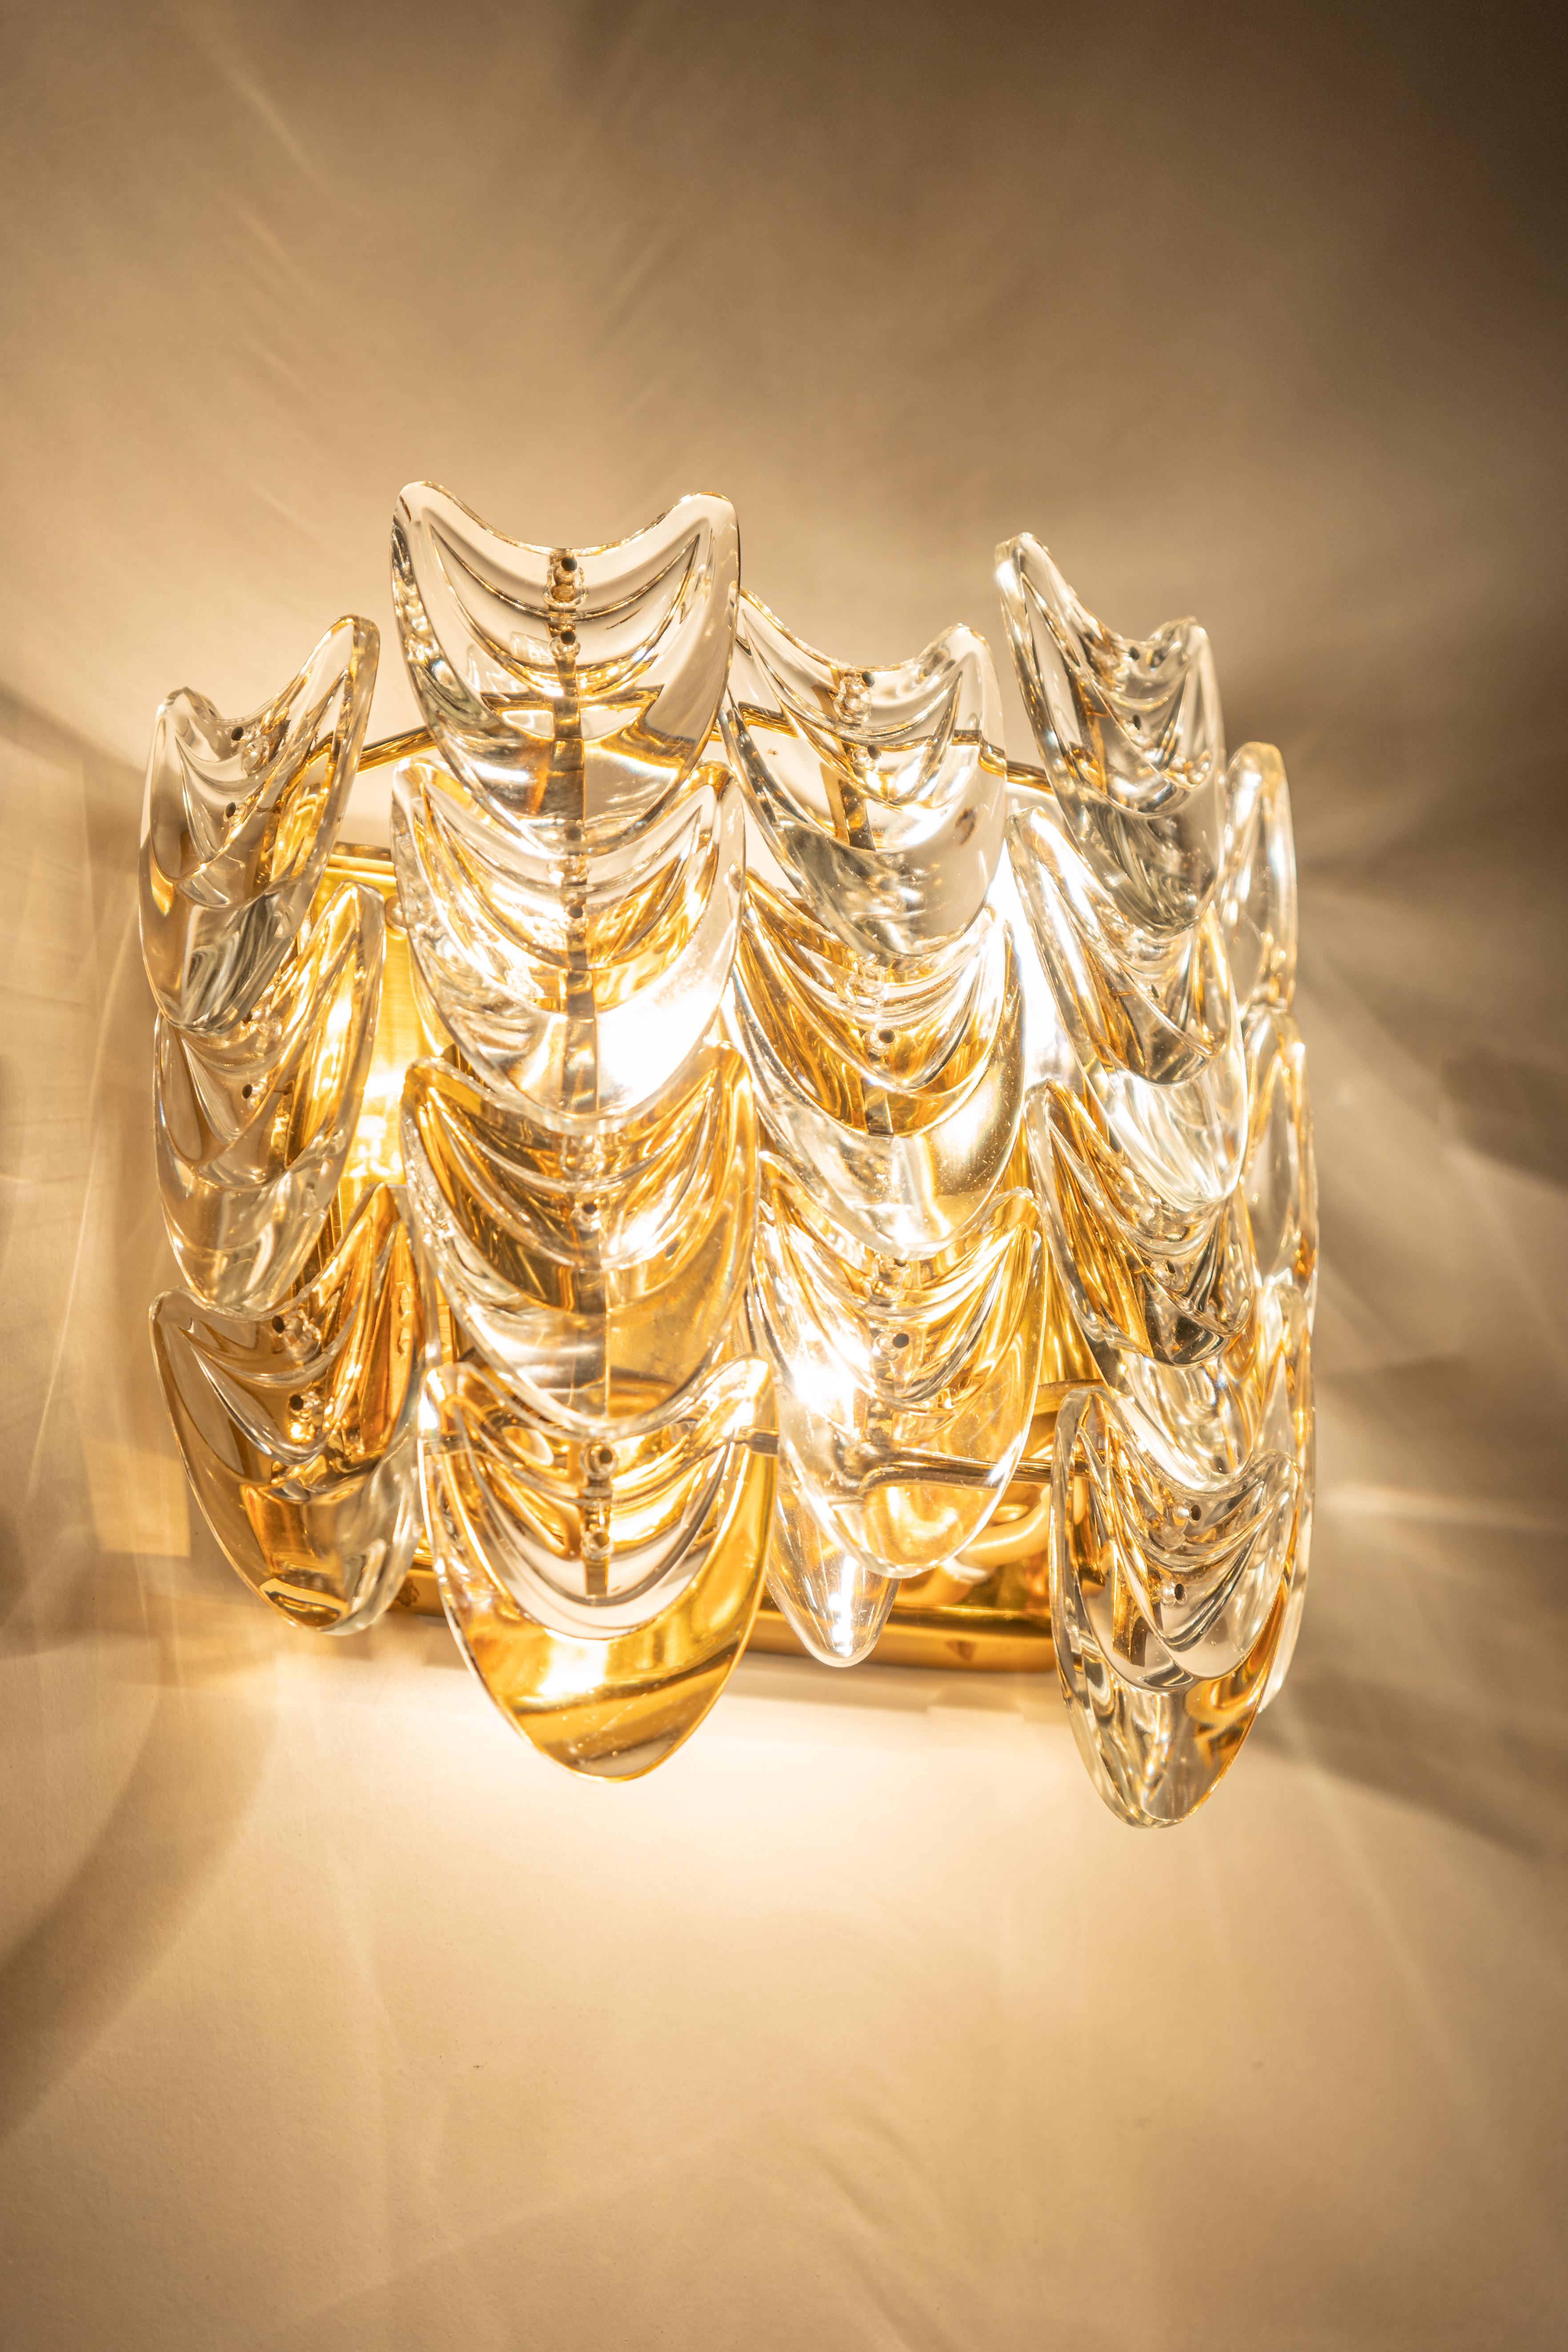 Ein Paar atemberaubender goldener Wandleuchter von Palwa, Design Sciolari Style- Deutschland, um 1960-1969.
Kristallgläser auf einem vergoldeten Messingrahmen.
Das Beste aus den 1960er Jahren aus Deutschland.

Hochwertig und in sehr gutem